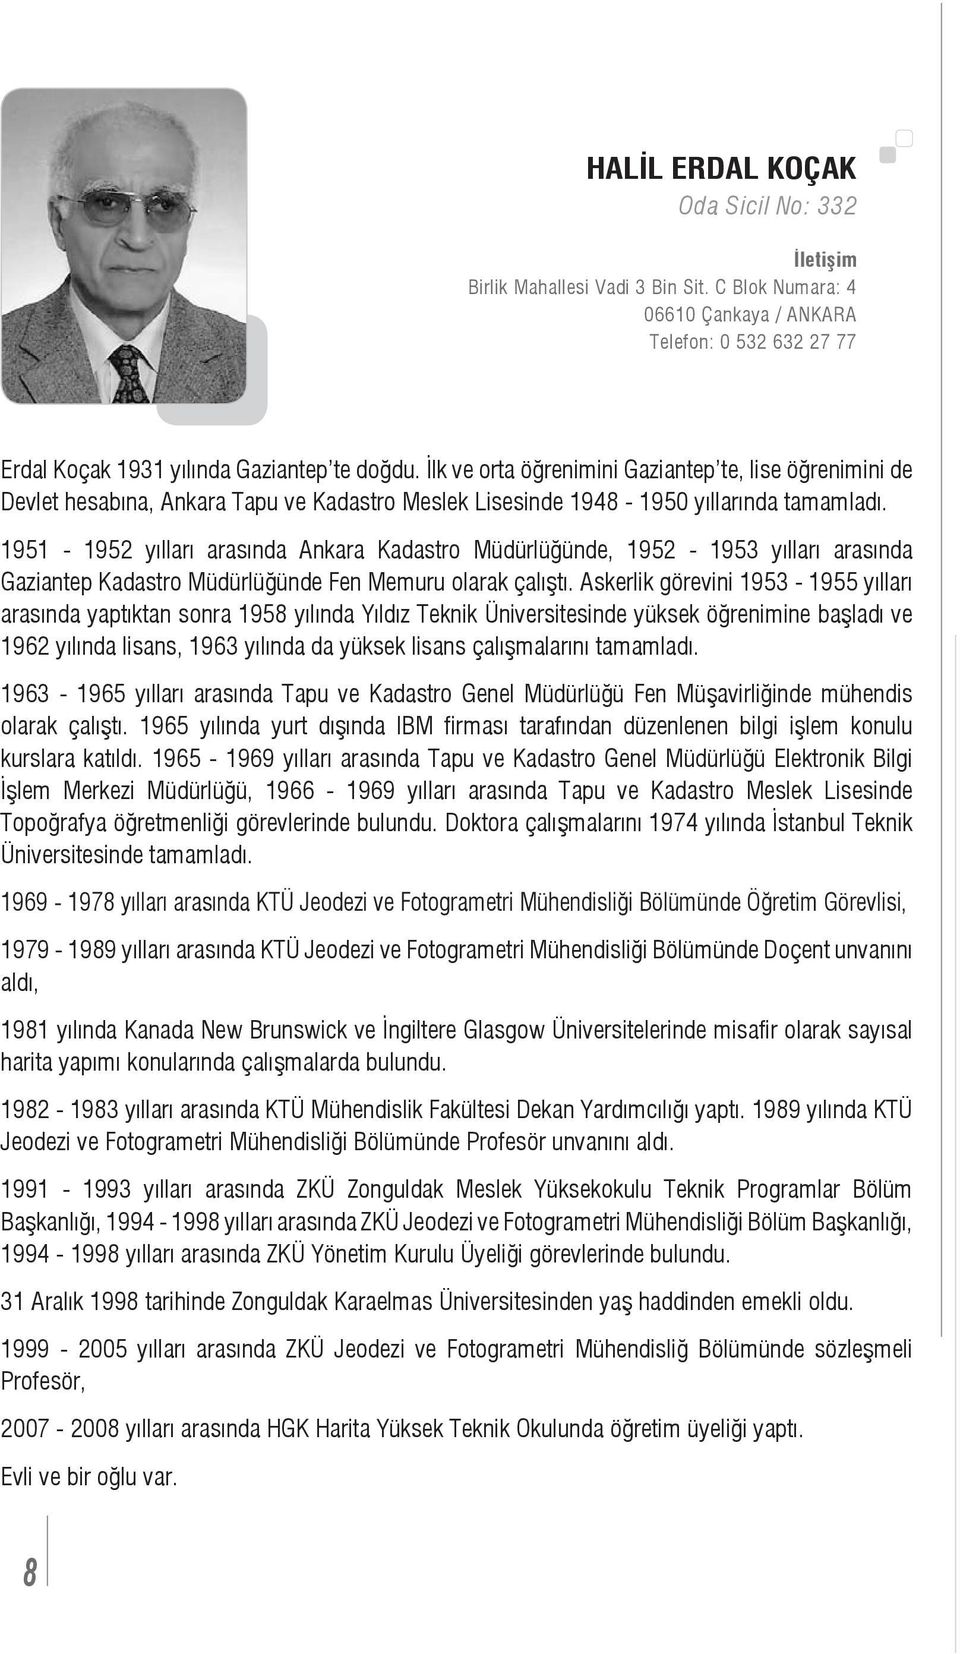 1951-1952 yılları arasında Ankara Kadastro Müdürlüğünde, 1952-1953 yılları arasında Gaziantep Kadastro Müdürlüğünde Fen Memuru olarak çalıştı.